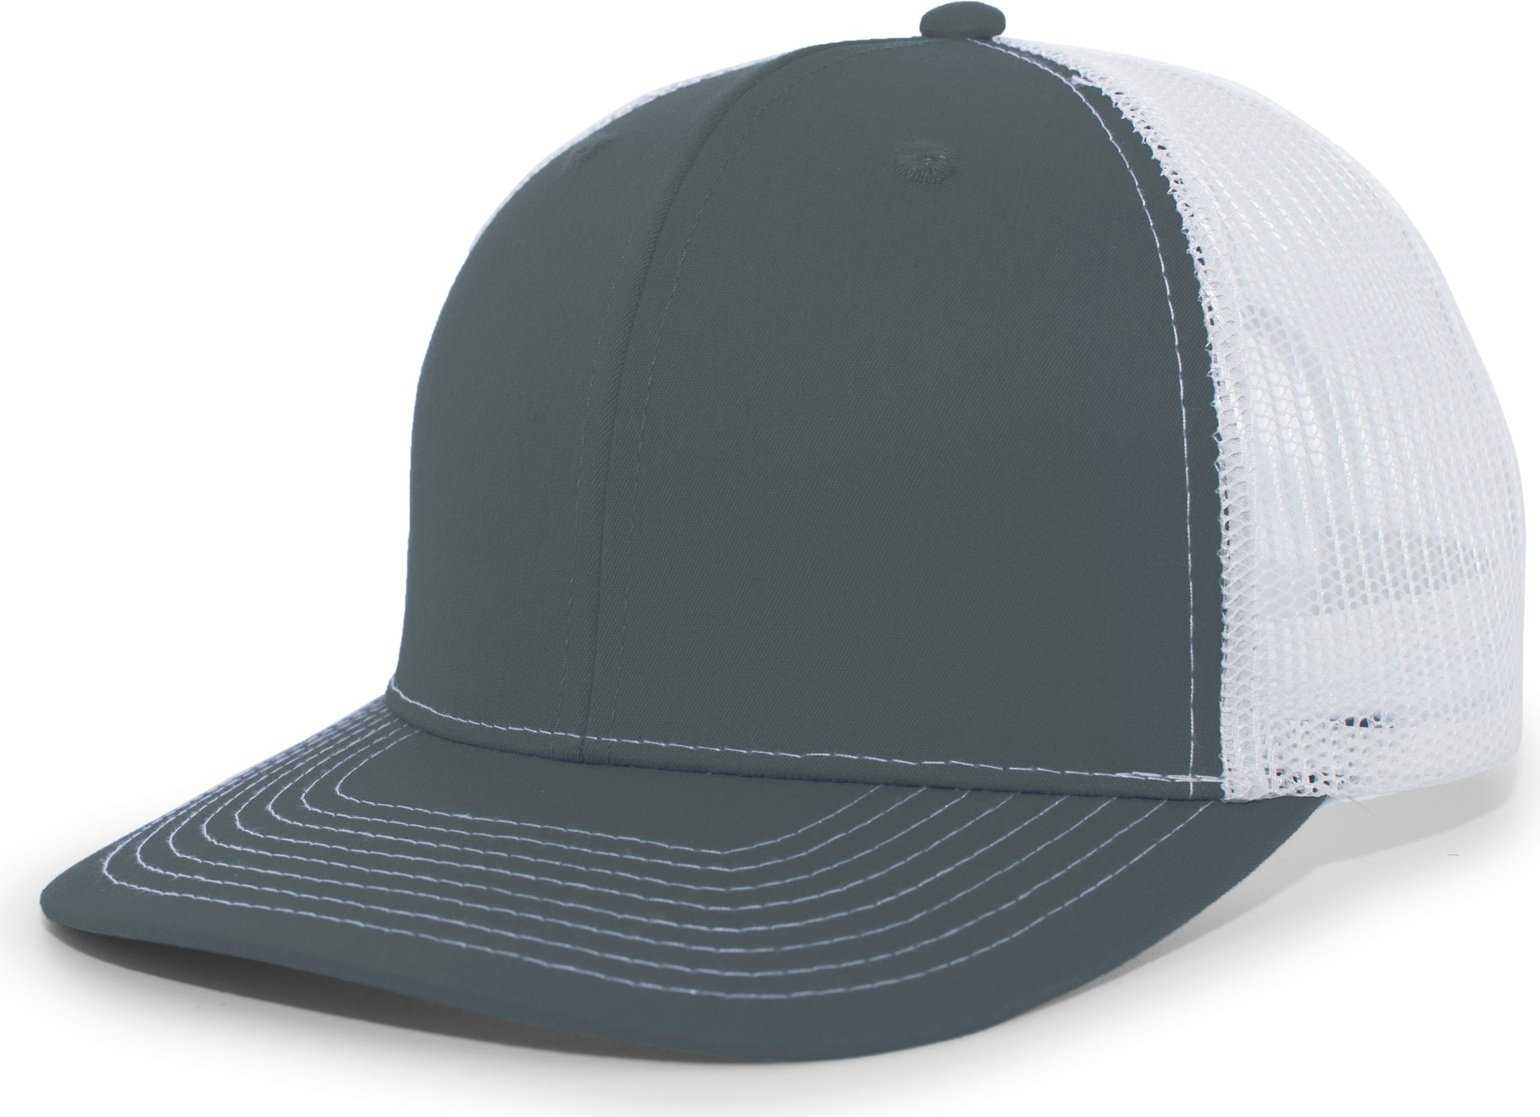 Pacific Headwear PE10 Trucker Snapback Cap - Graphite White - HIT a Double